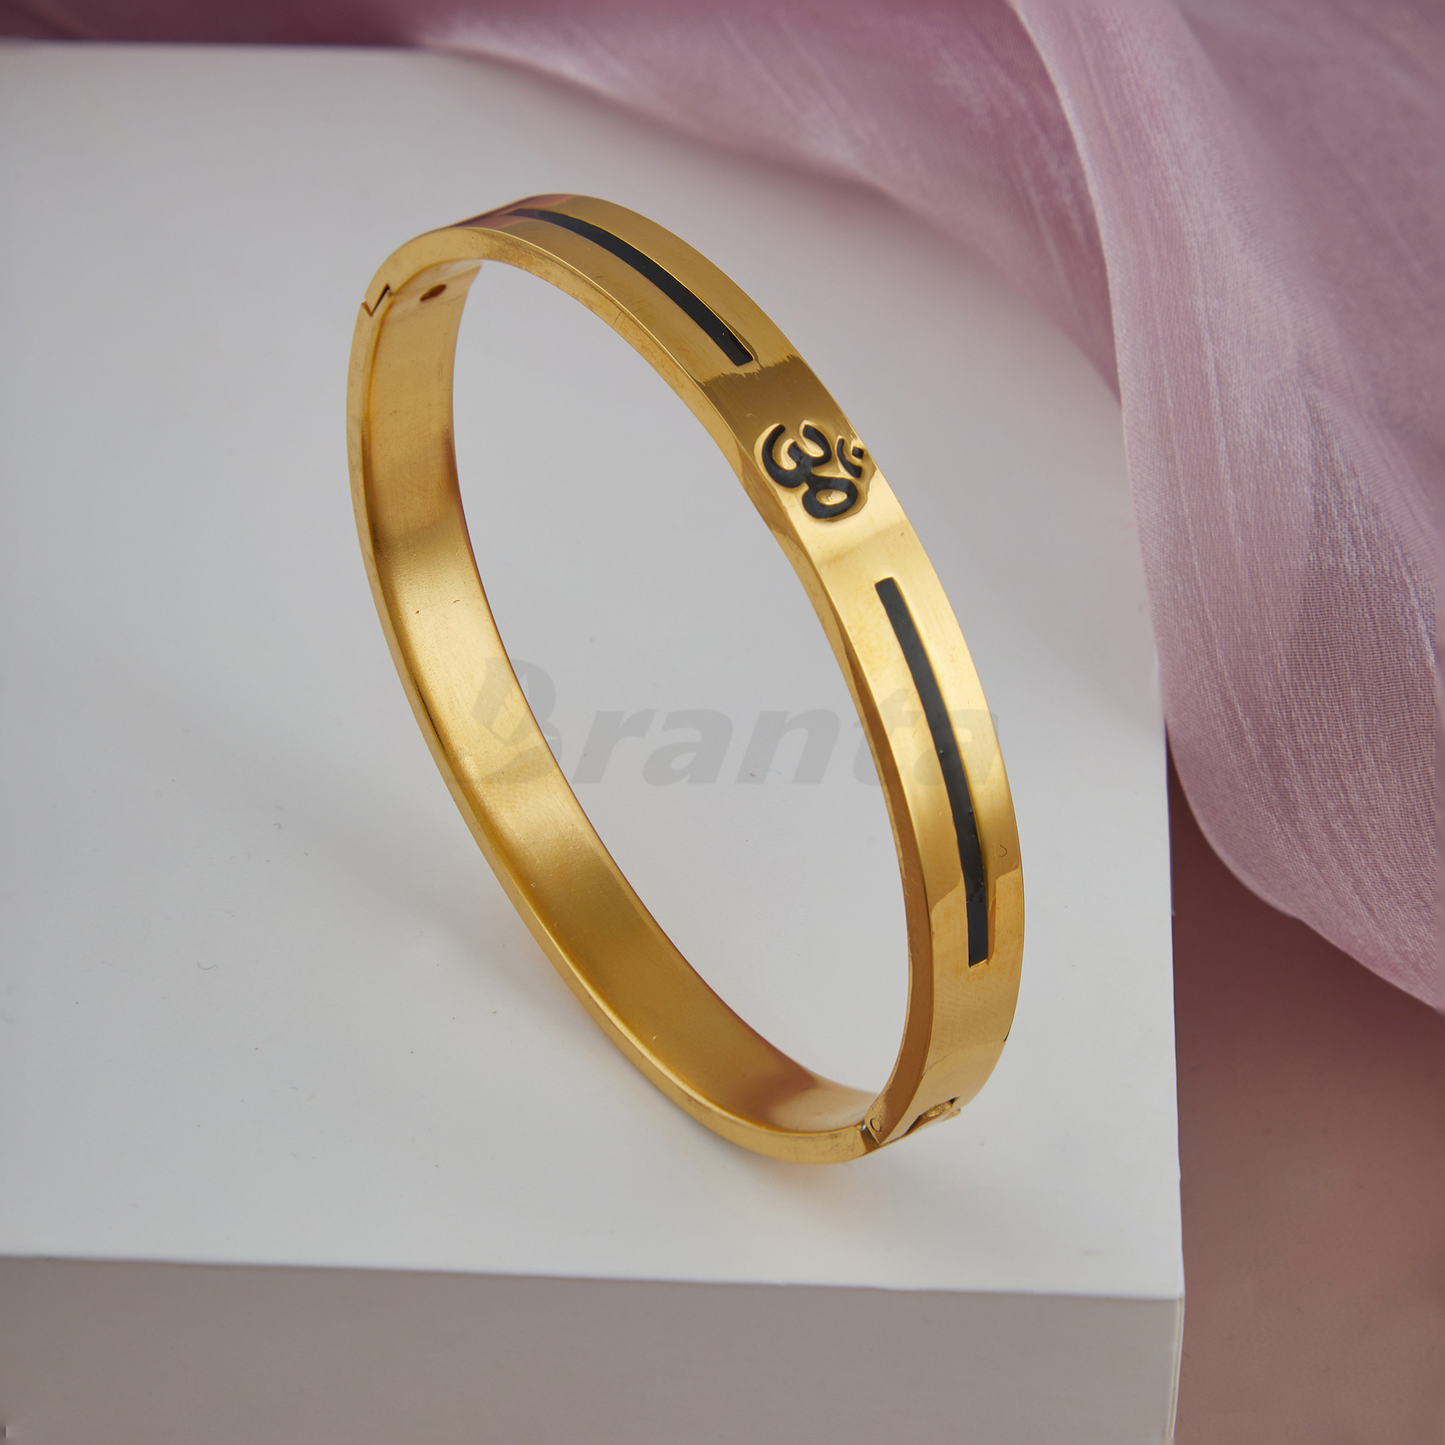 Om Men's Gold Bracelet With Black Line